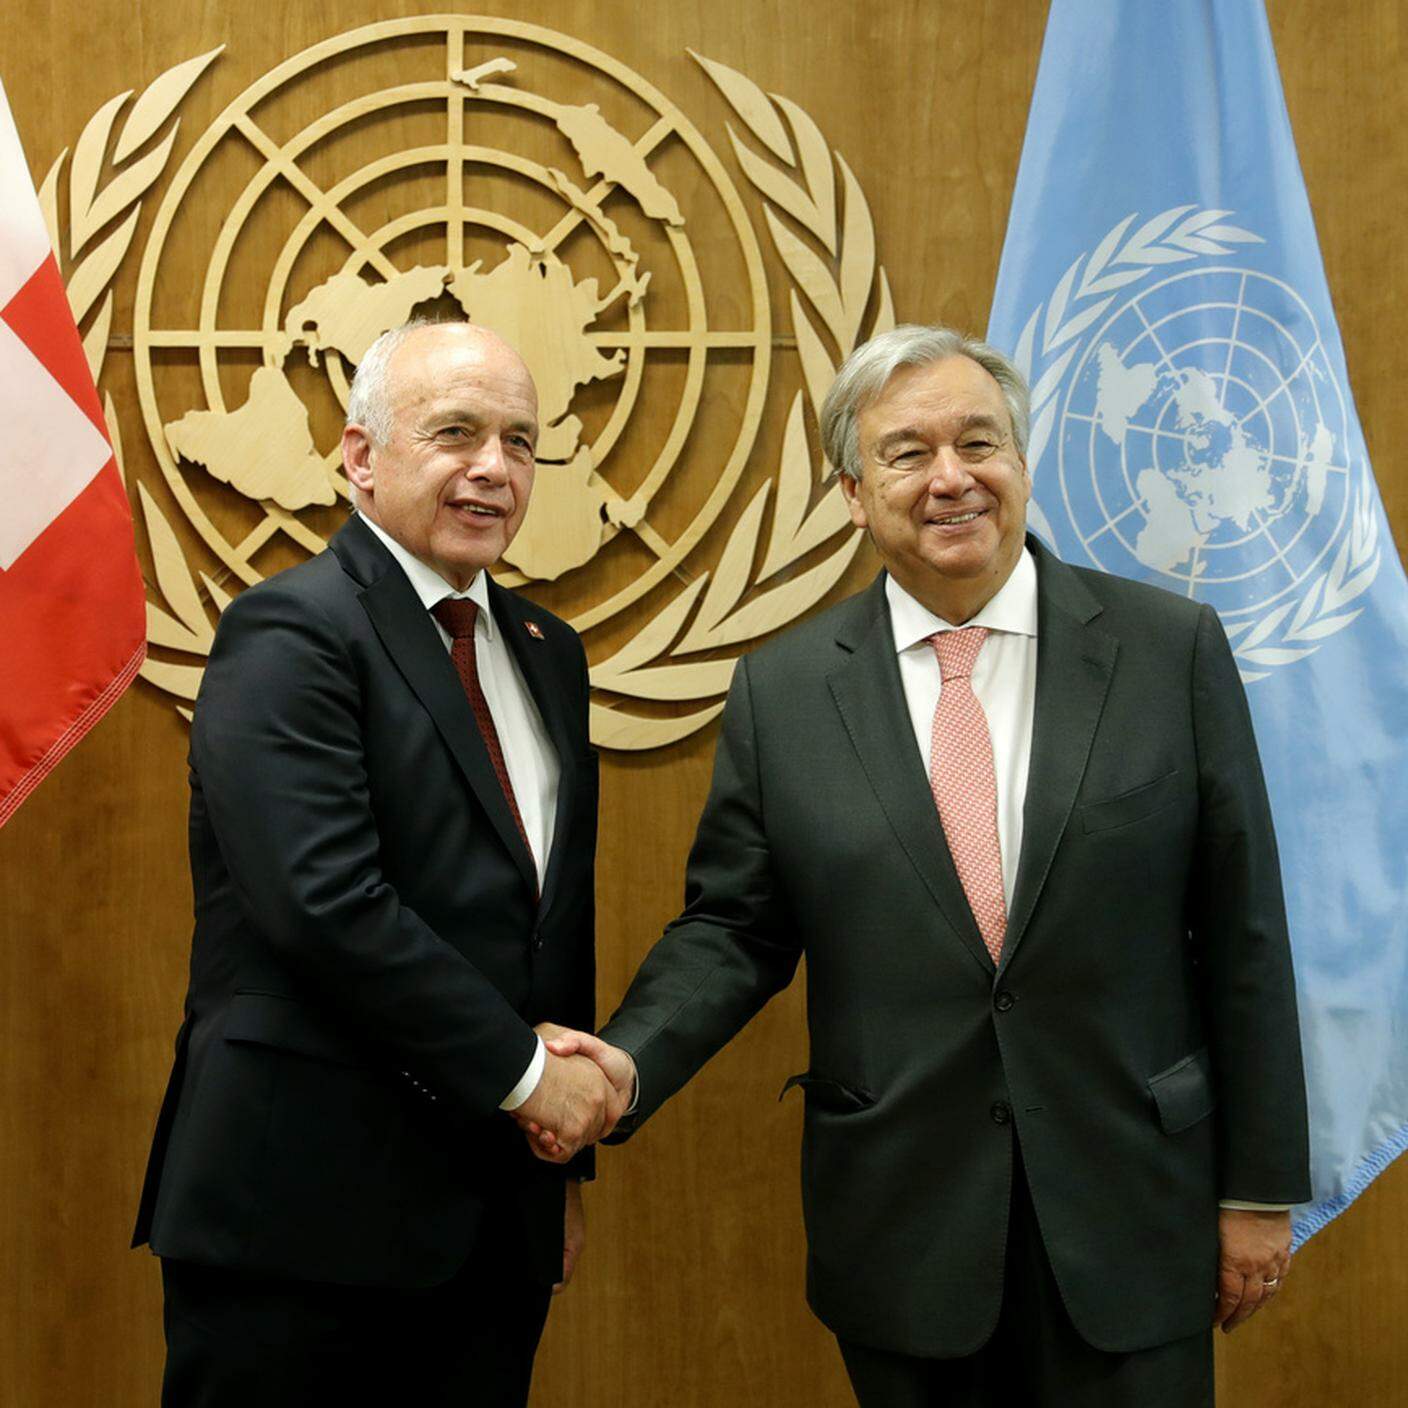 Ueli Maurer e António Guterres